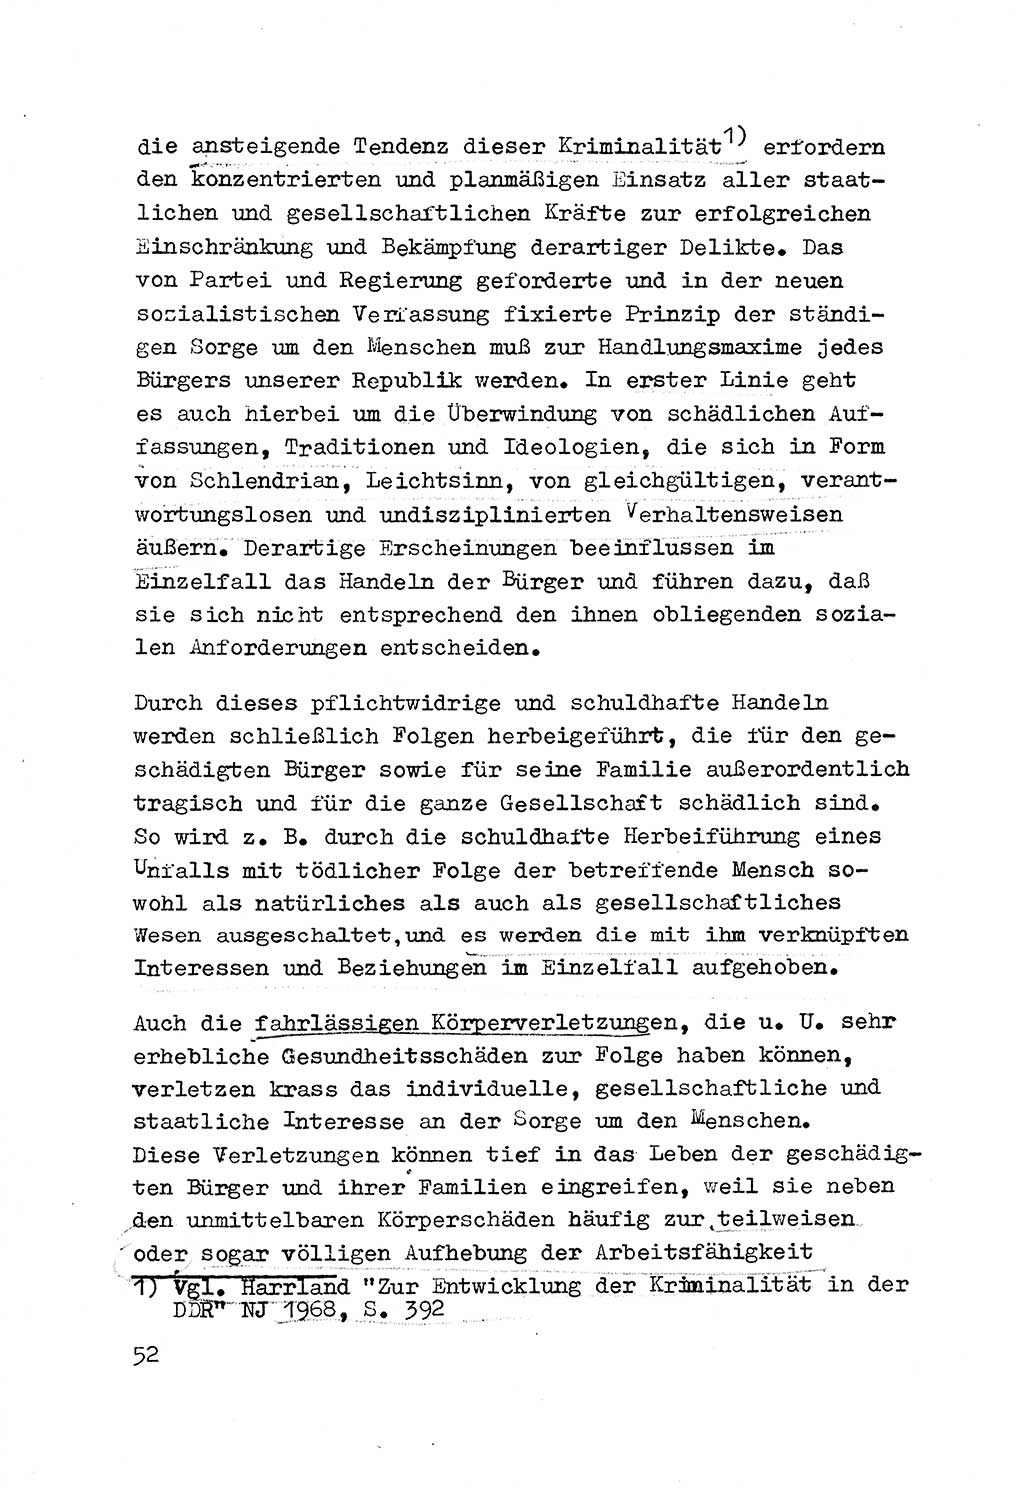 Strafrecht der DDR (Deutsche Demokratische Republik), Besonderer Teil, Lehrmaterial, Heft 3 1969, Seite 52 (Strafr. DDR BT Lehrmat. H. 3 1969, S. 52)